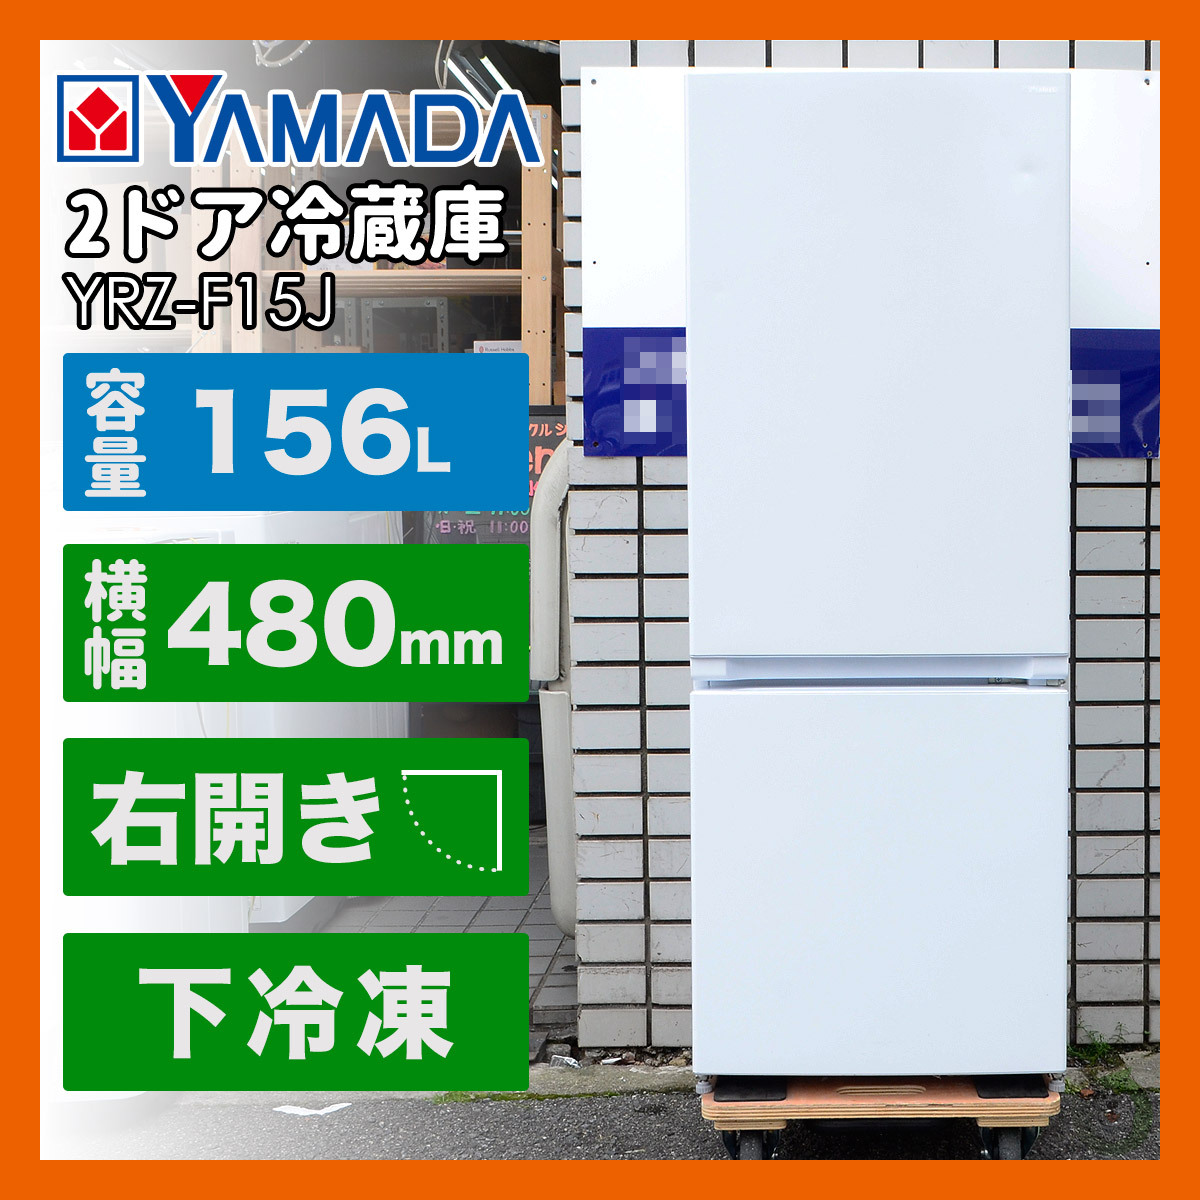 【大阪発】Yselect/ヤマダ電機 ノンフロン 2ドア冷蔵庫 156L YRZ-F15J 2021年製 右開き 一人暮らし 新生活の画像1